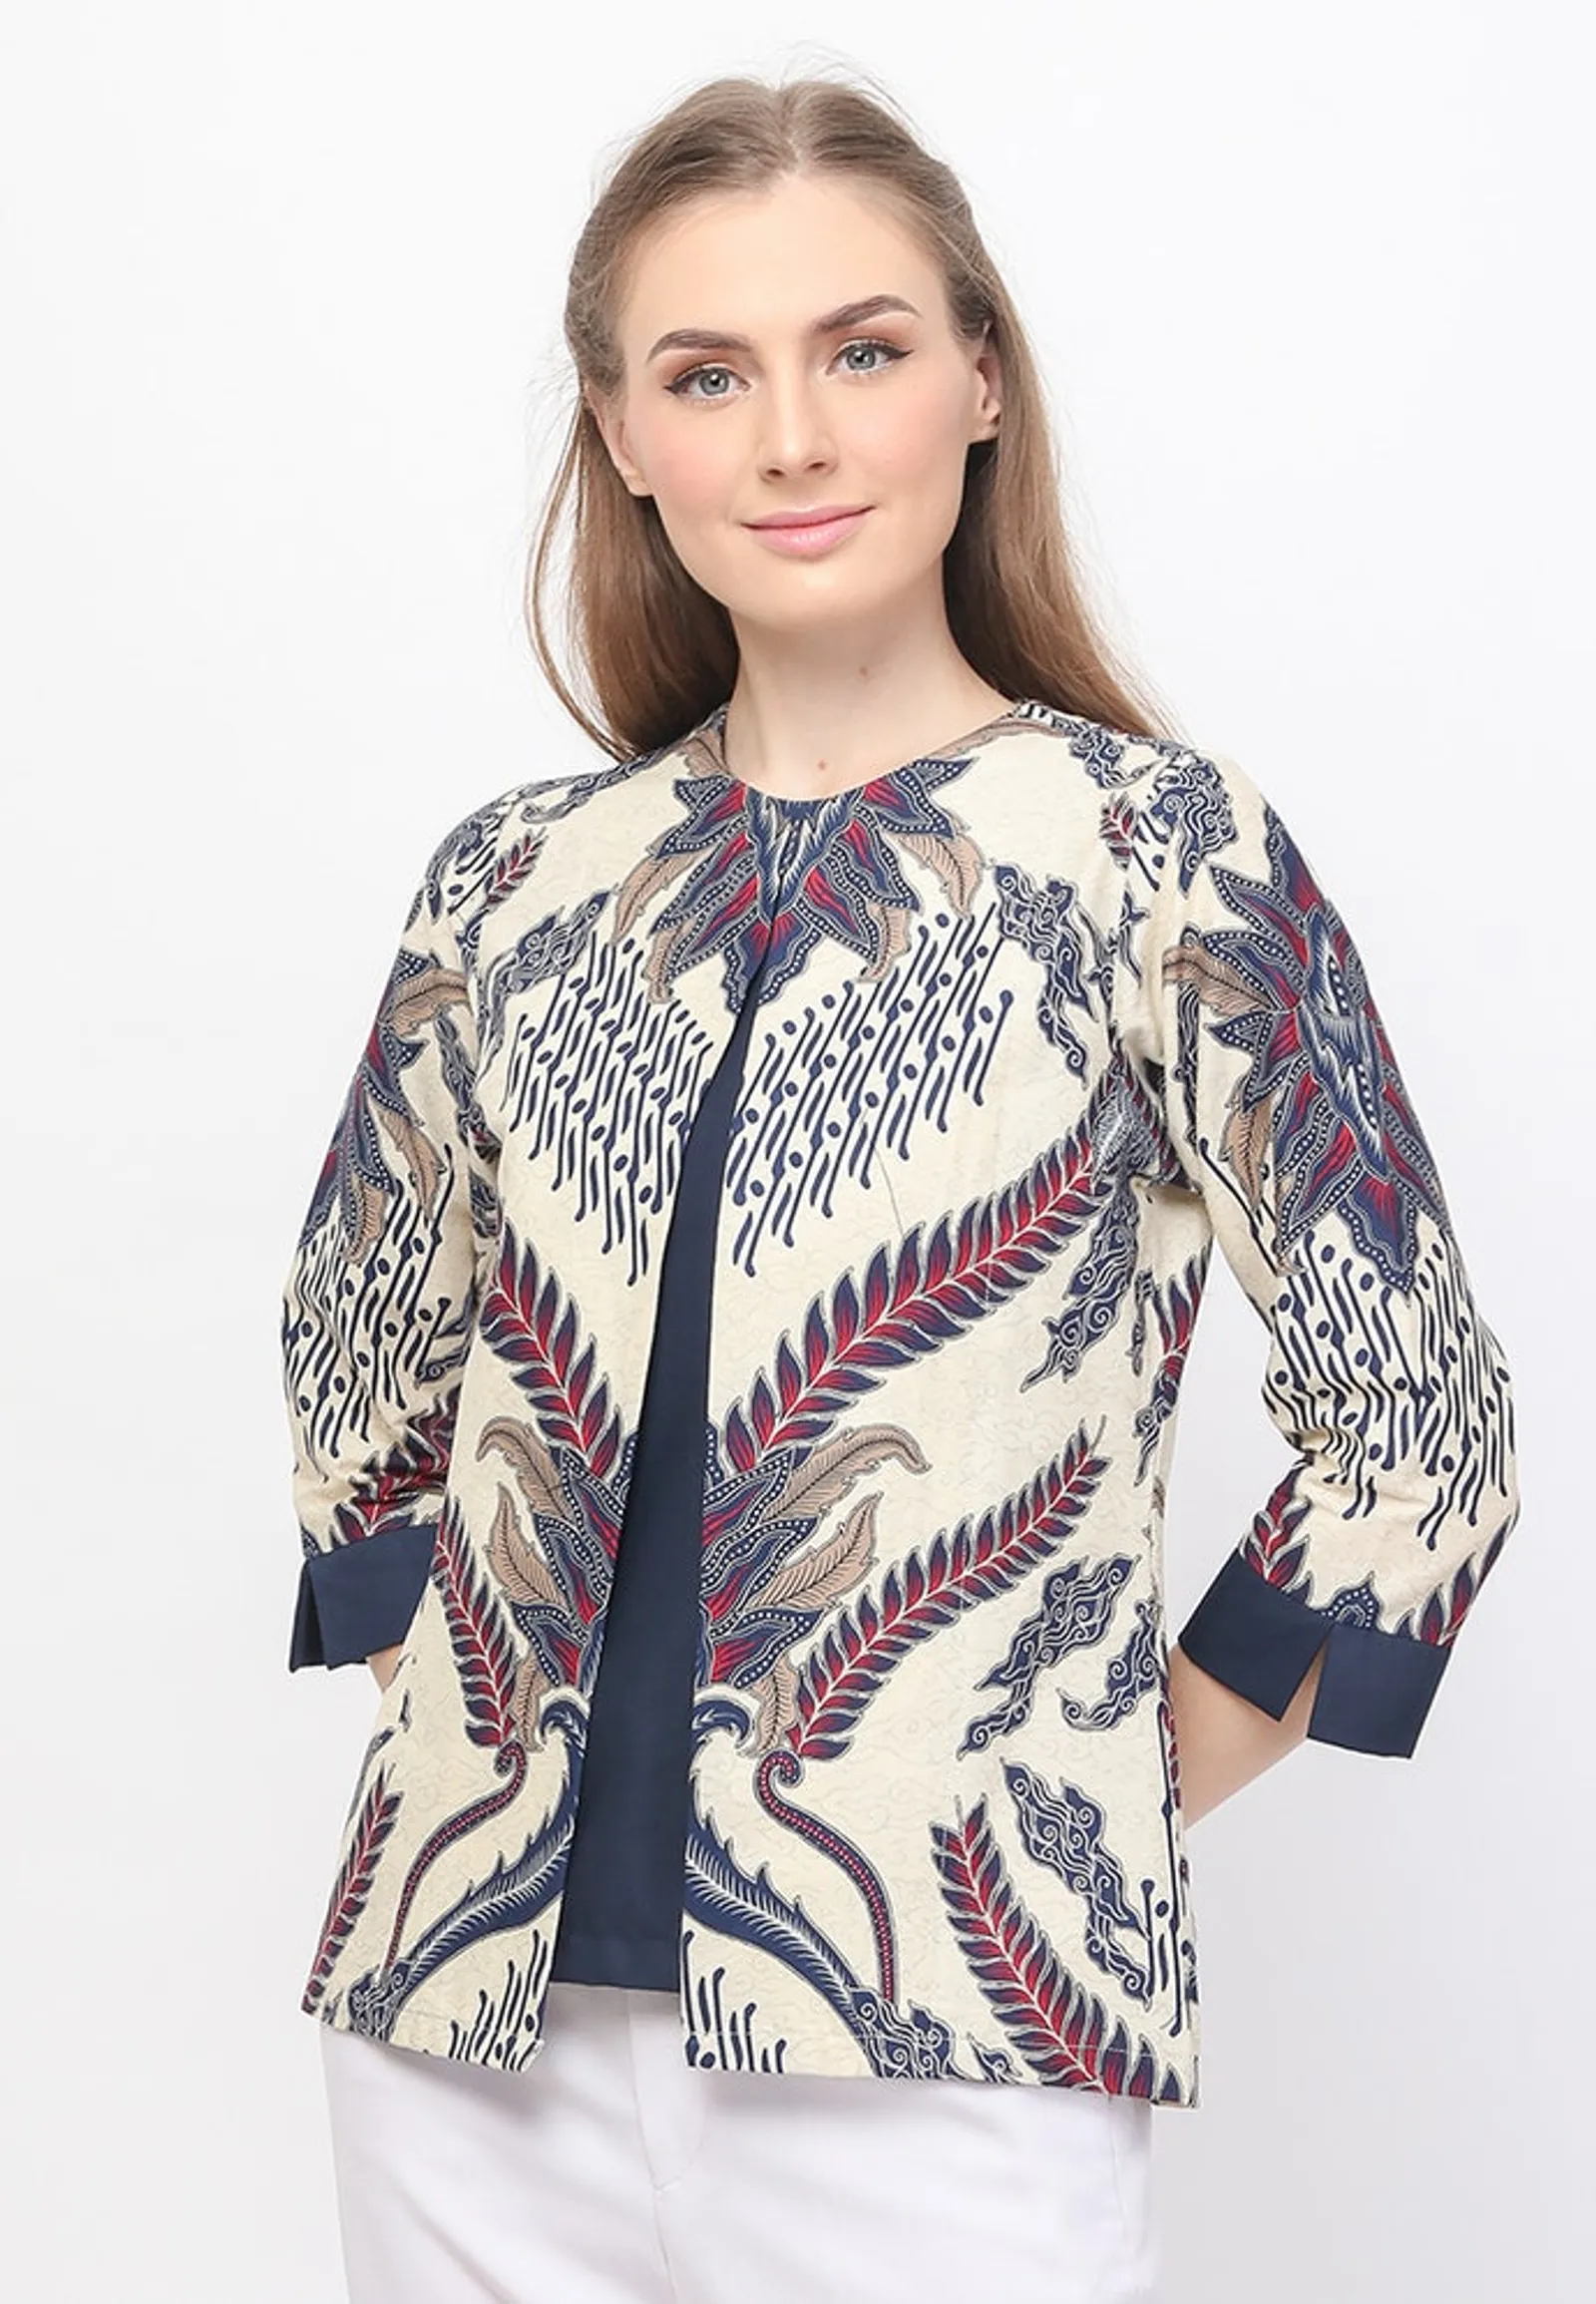 Rekomendasi Model Batik Perempuan untuk Outfit Kerja